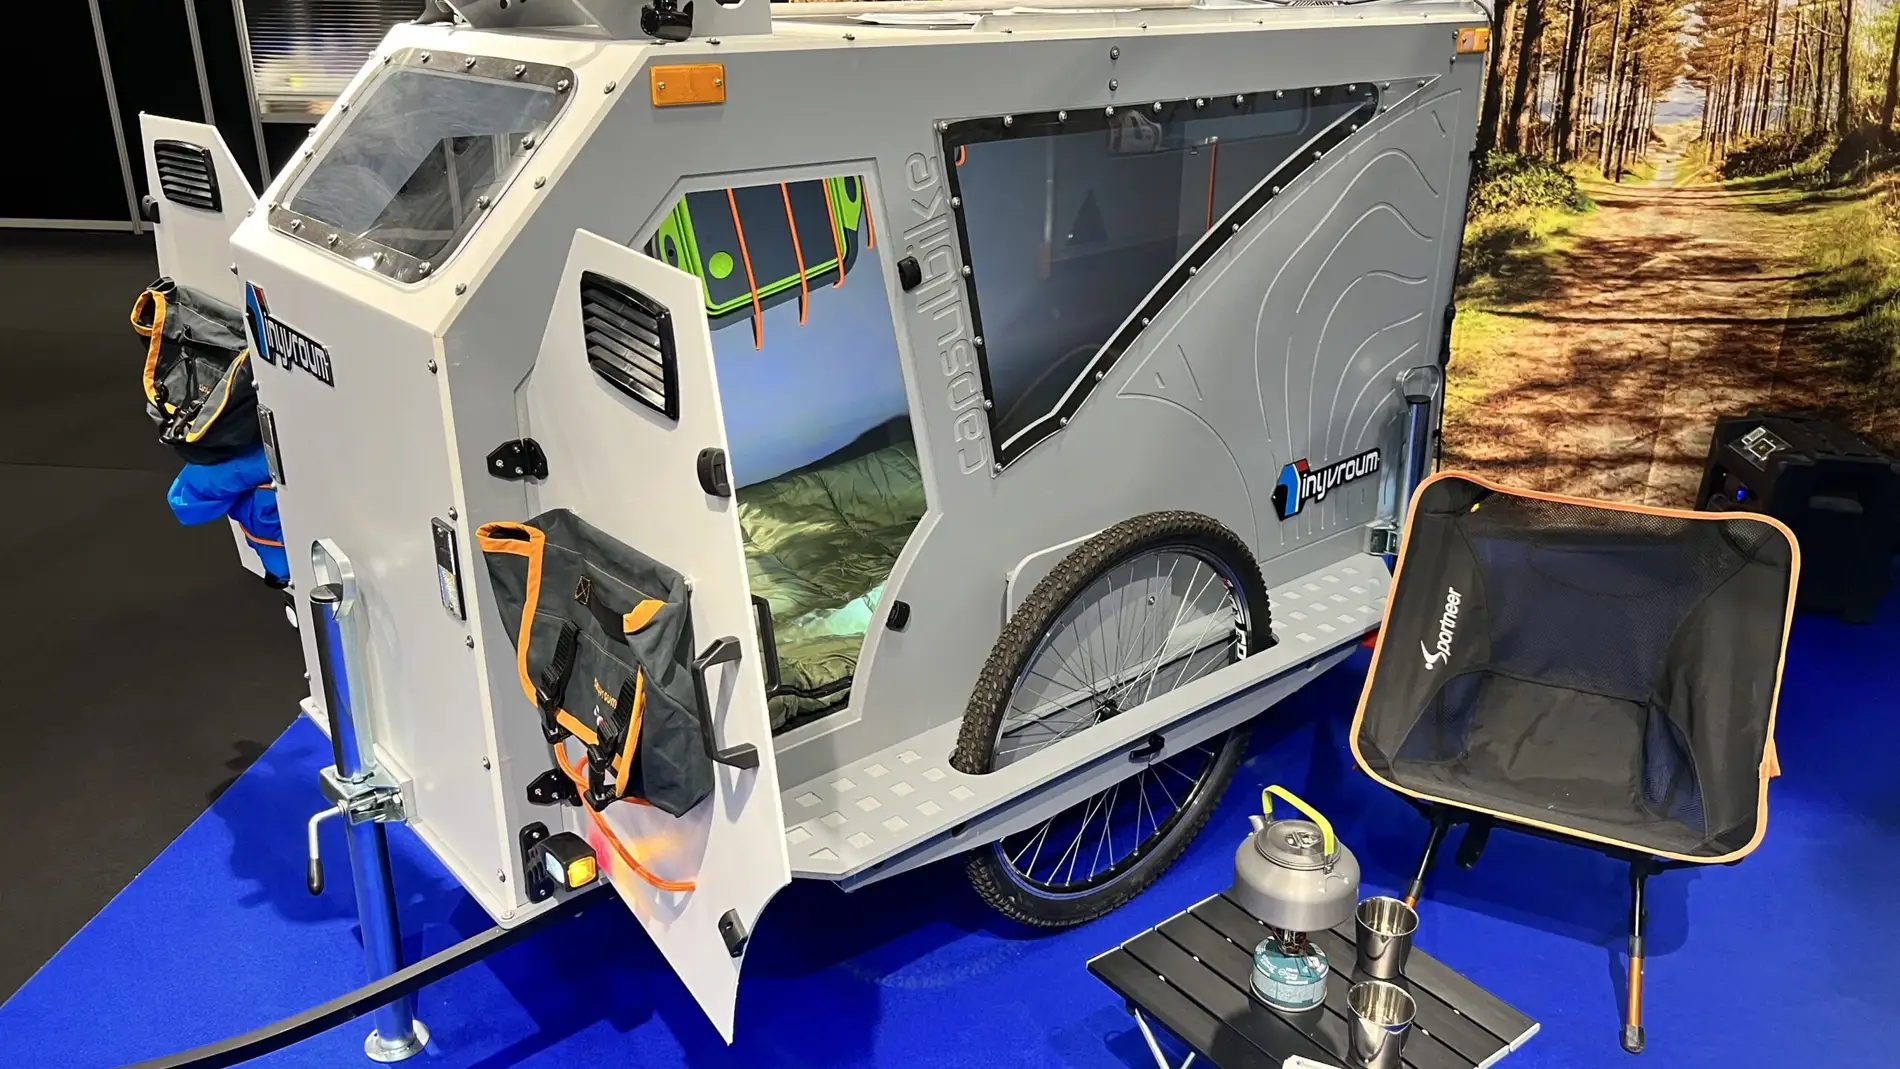 La mini caravana creada para los amantes de la bicicleta 